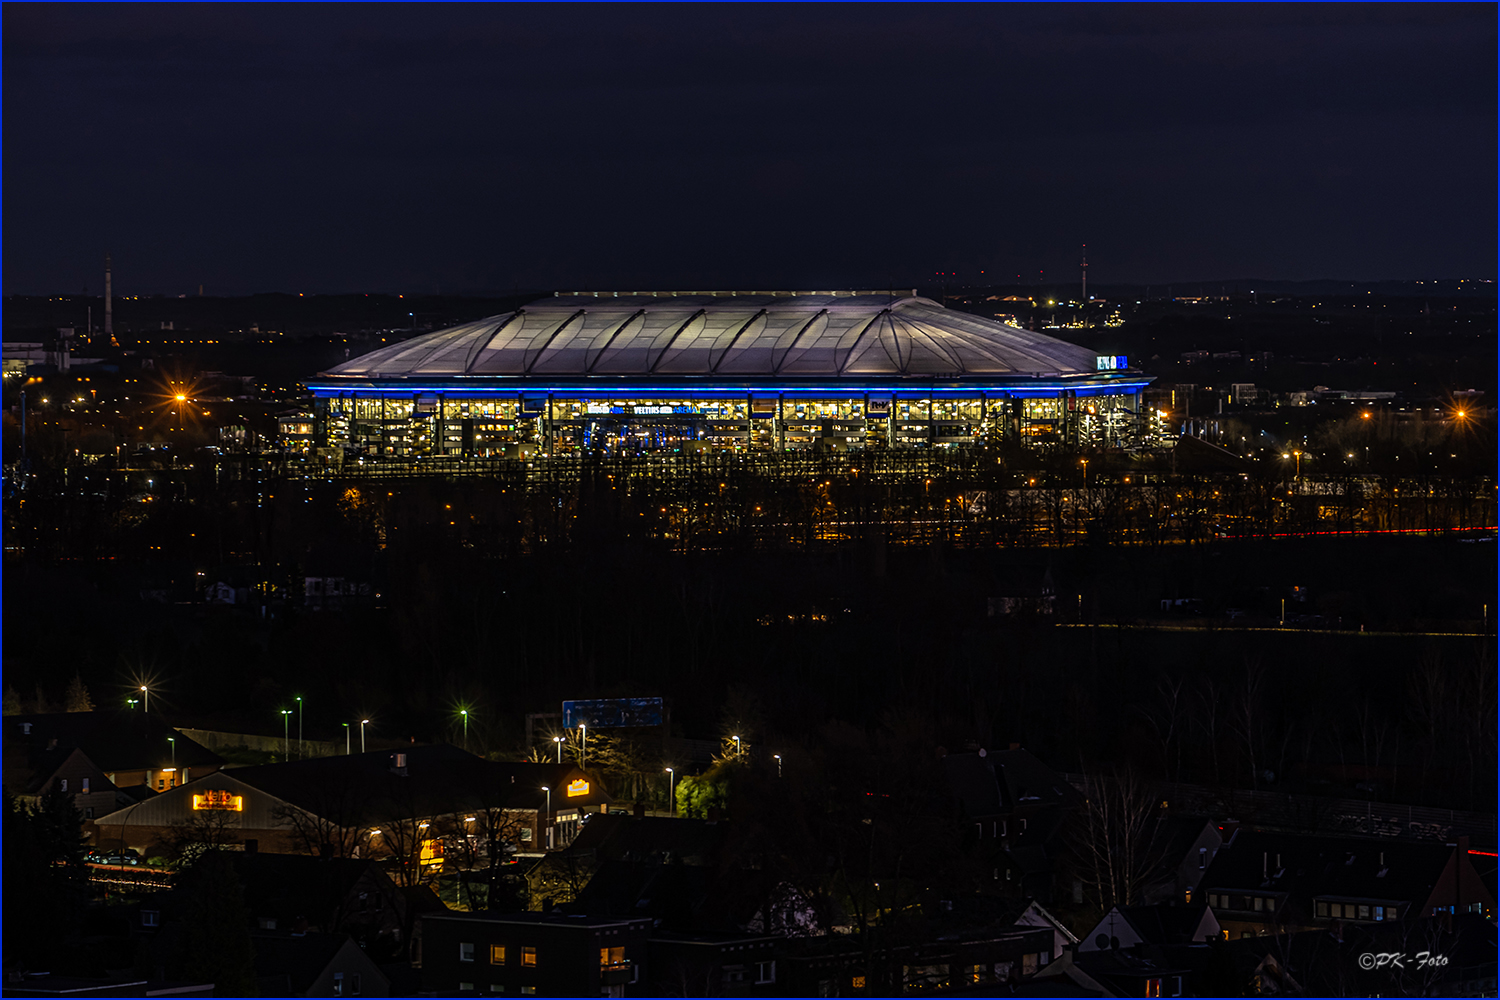 Veltins-Arena "Auf Schalke"